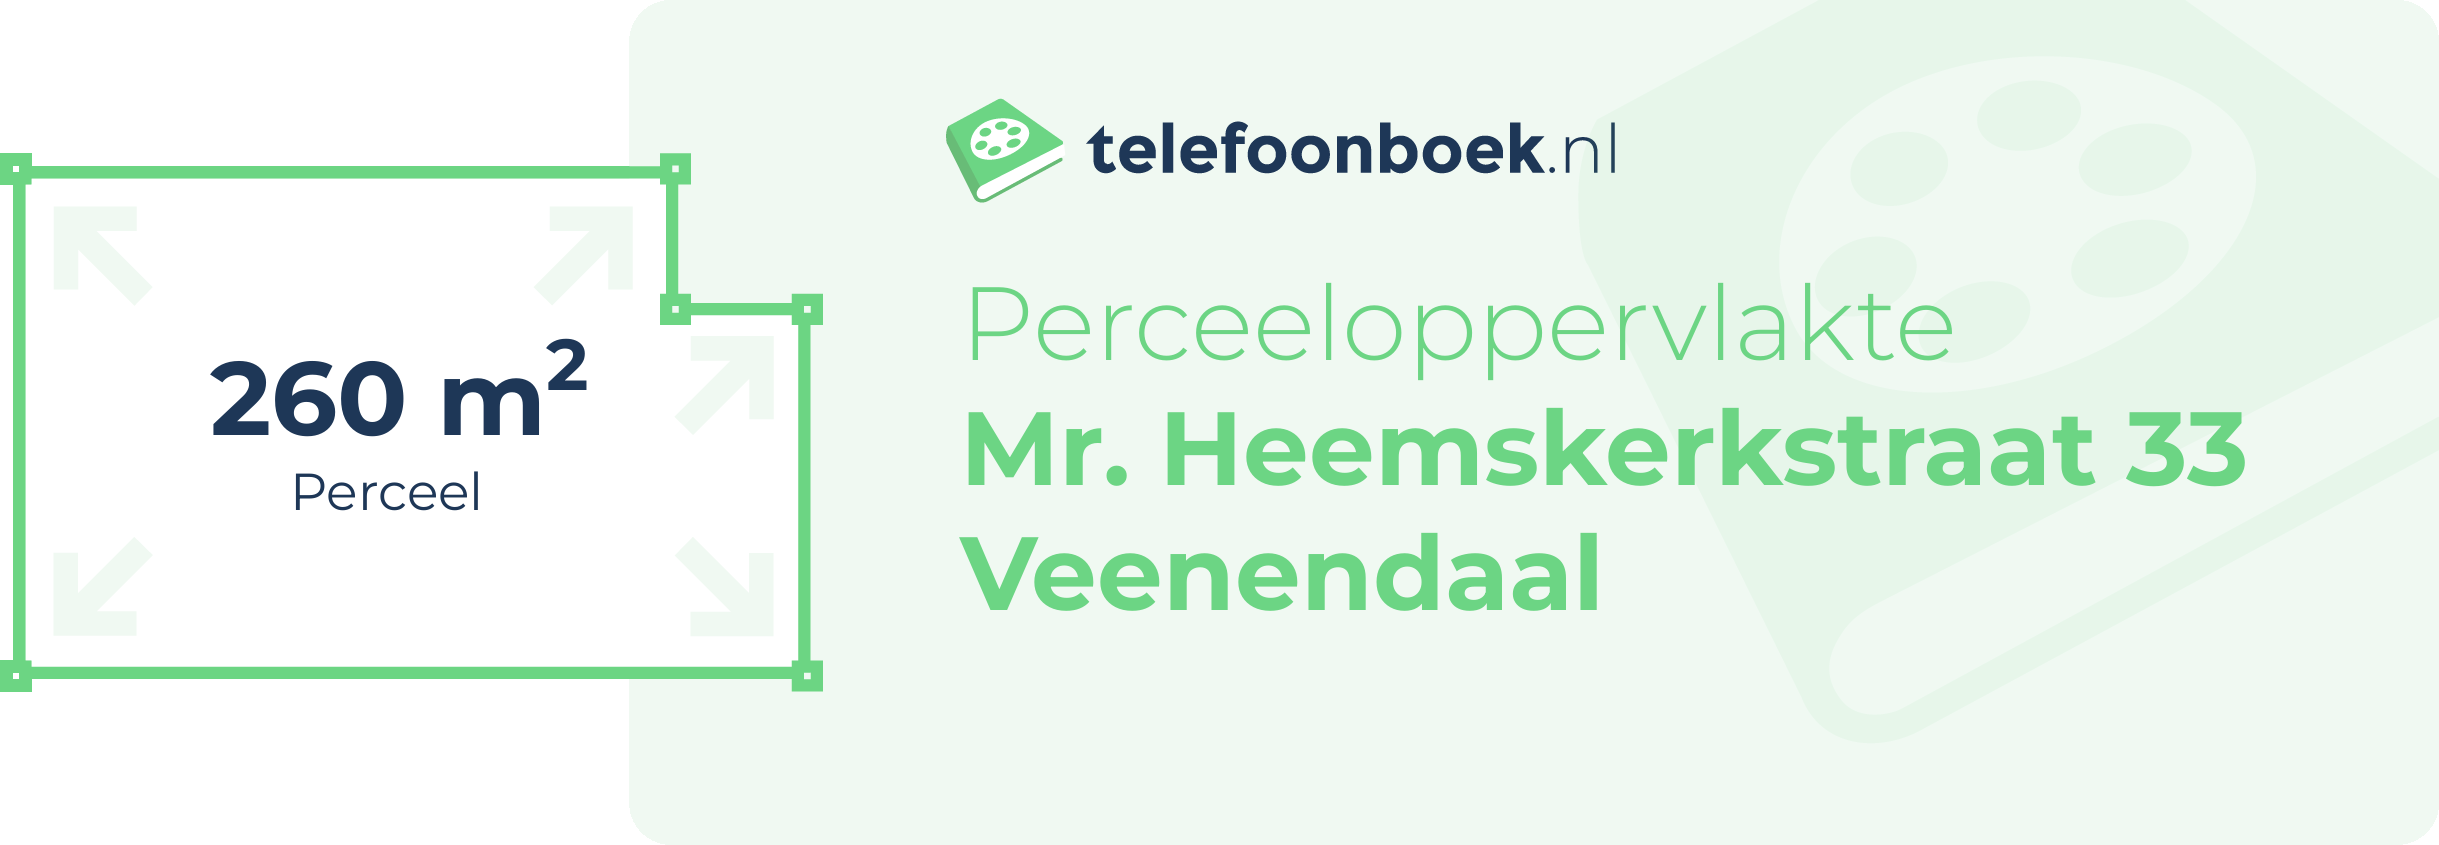 Perceeloppervlakte Mr. Heemskerkstraat 33 Veenendaal